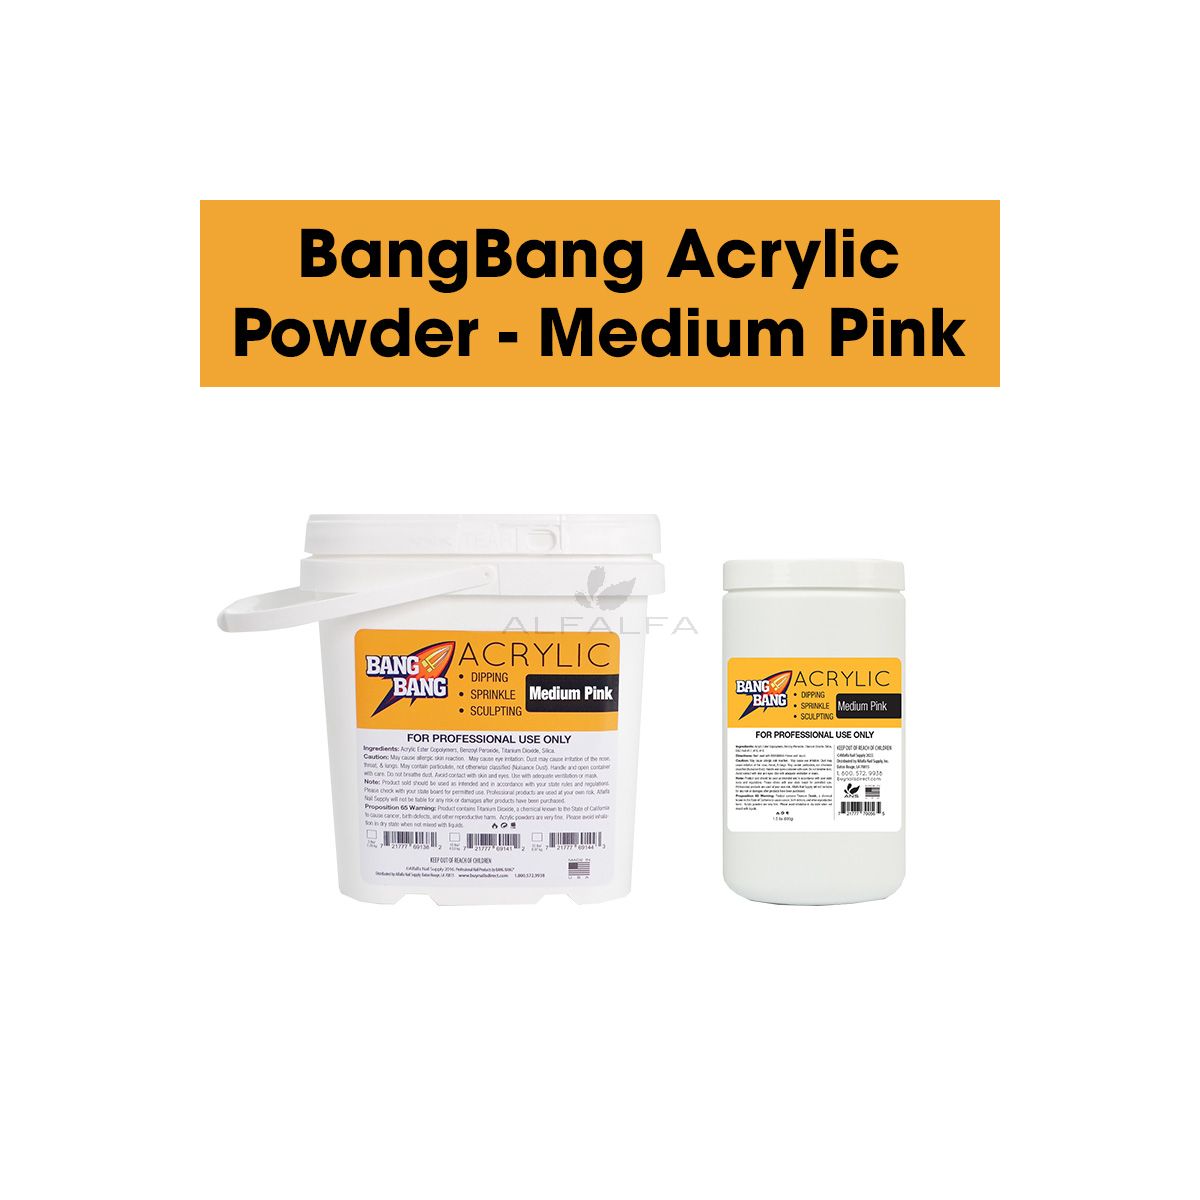 BangBang Acrylic Powder - Medium Pink 